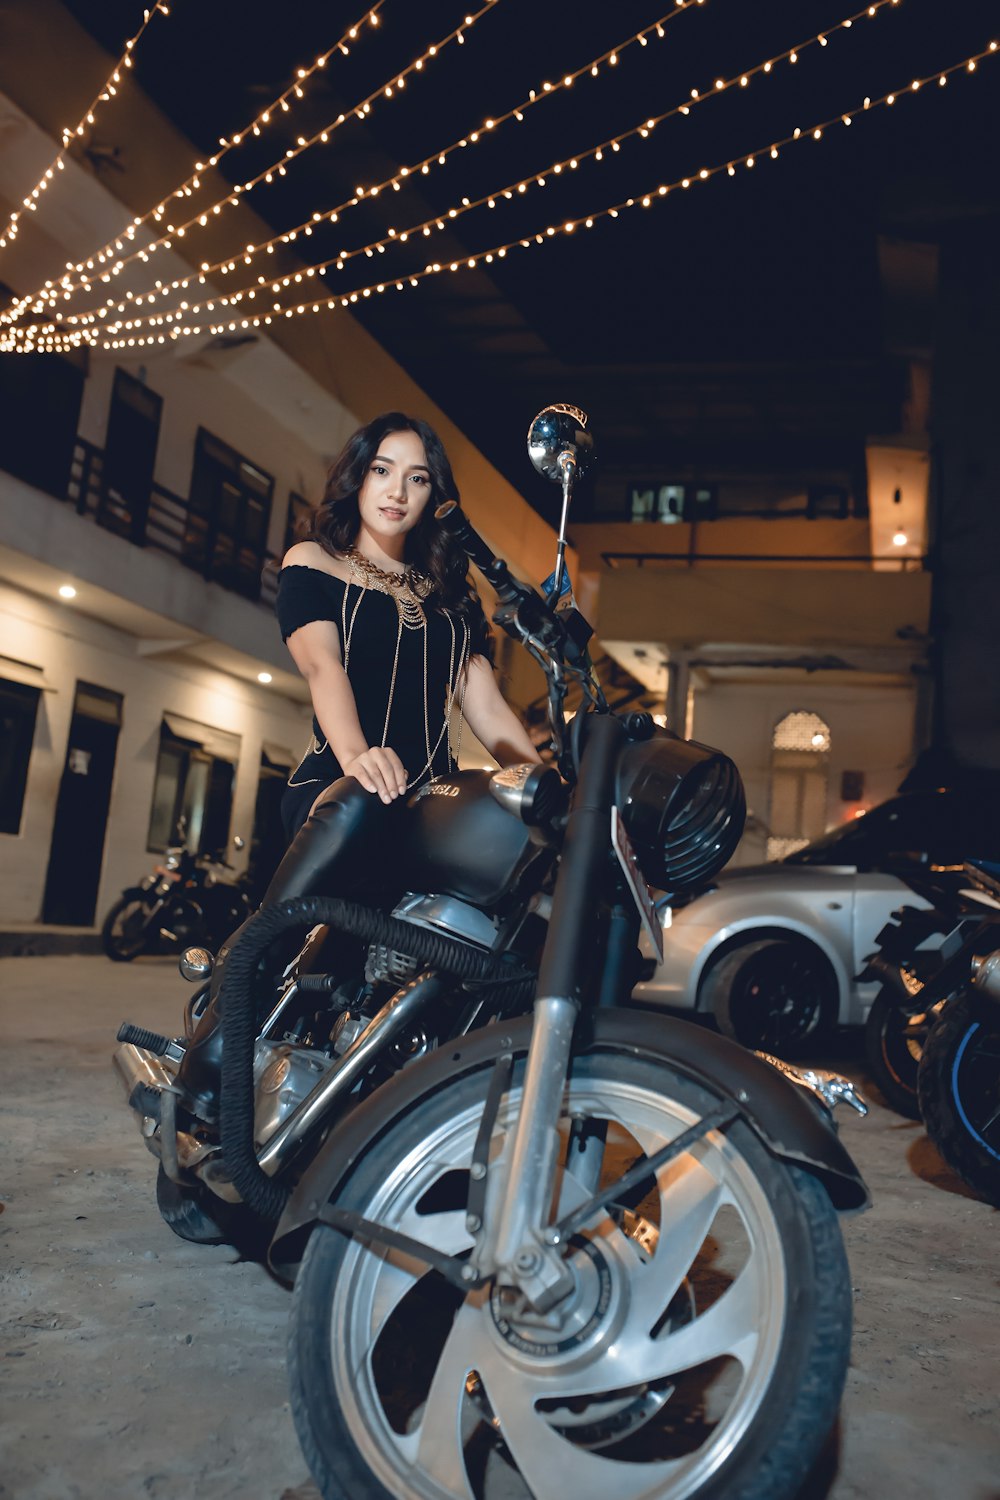 Mujer en vestido negro montando en motocicleta negra durante la noche